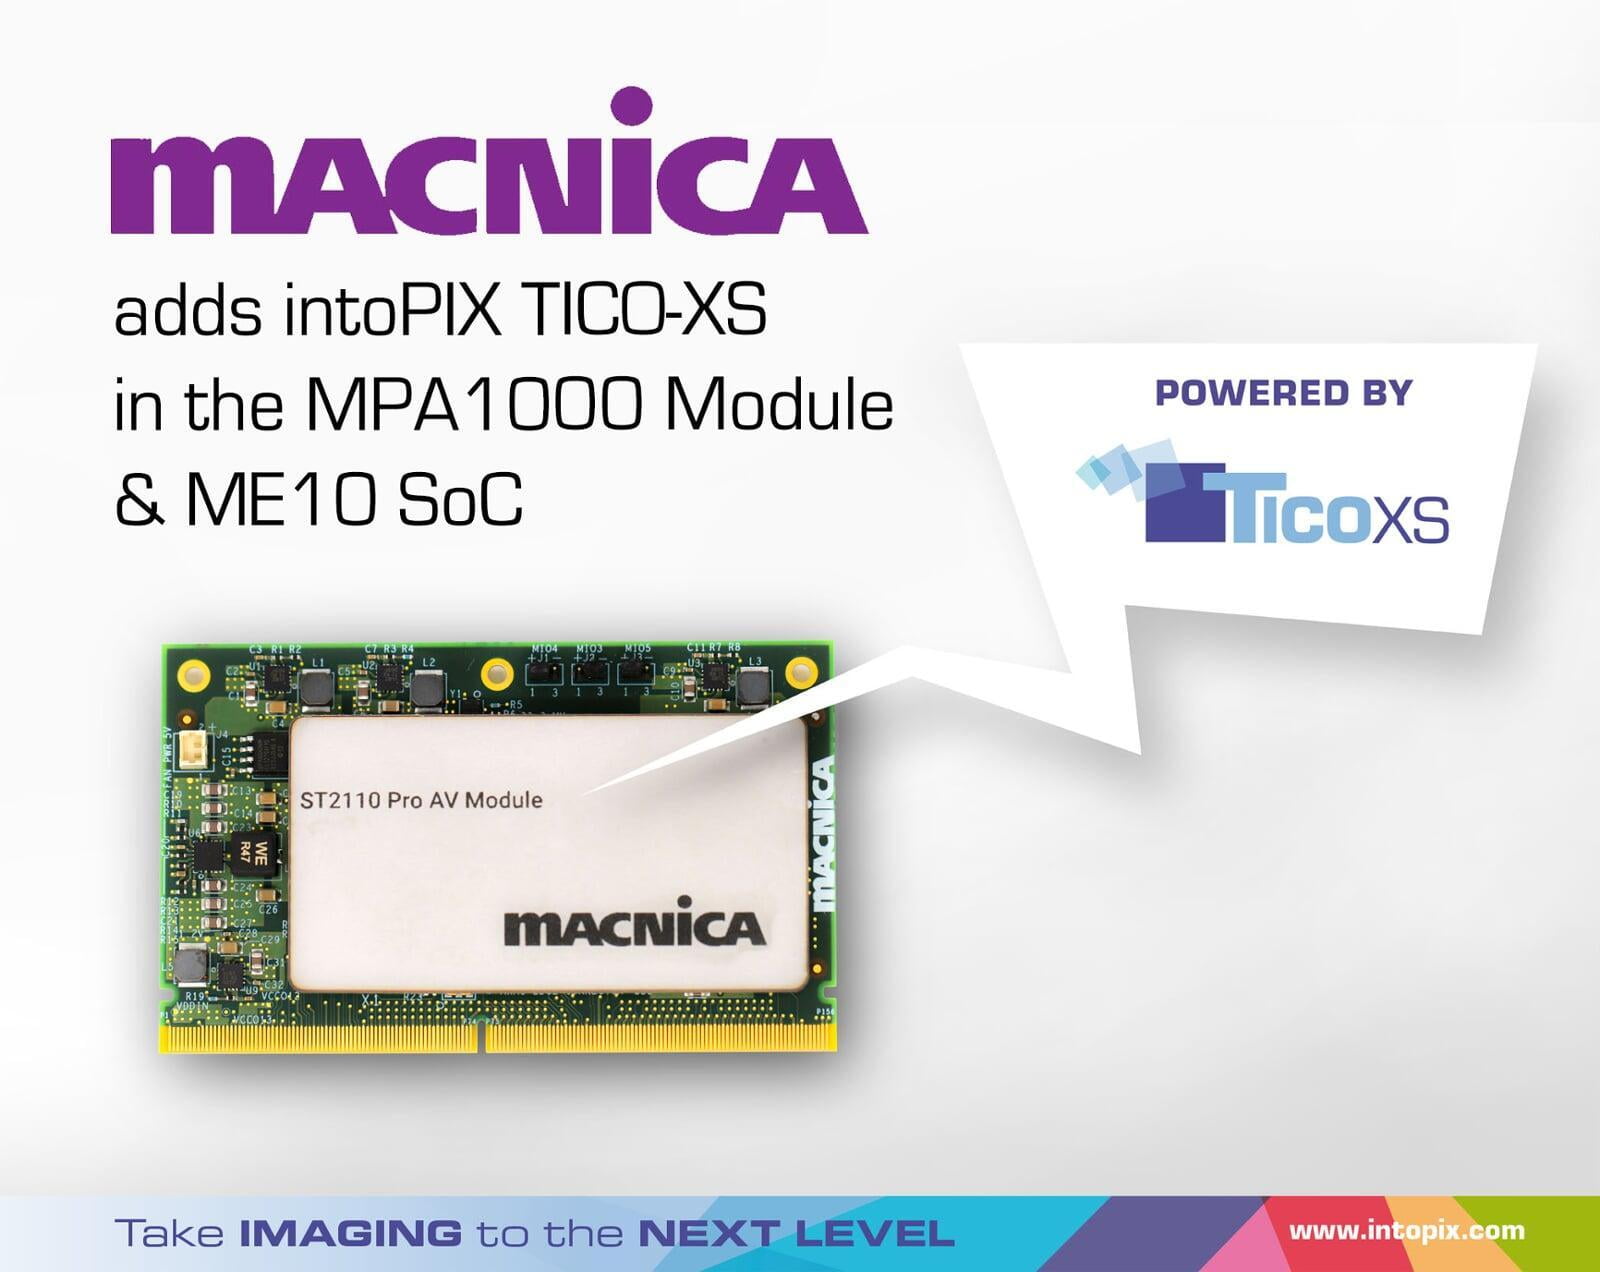 Macnica 的 4K ProAV OEM 解决方案采用intoPIX TicoXS